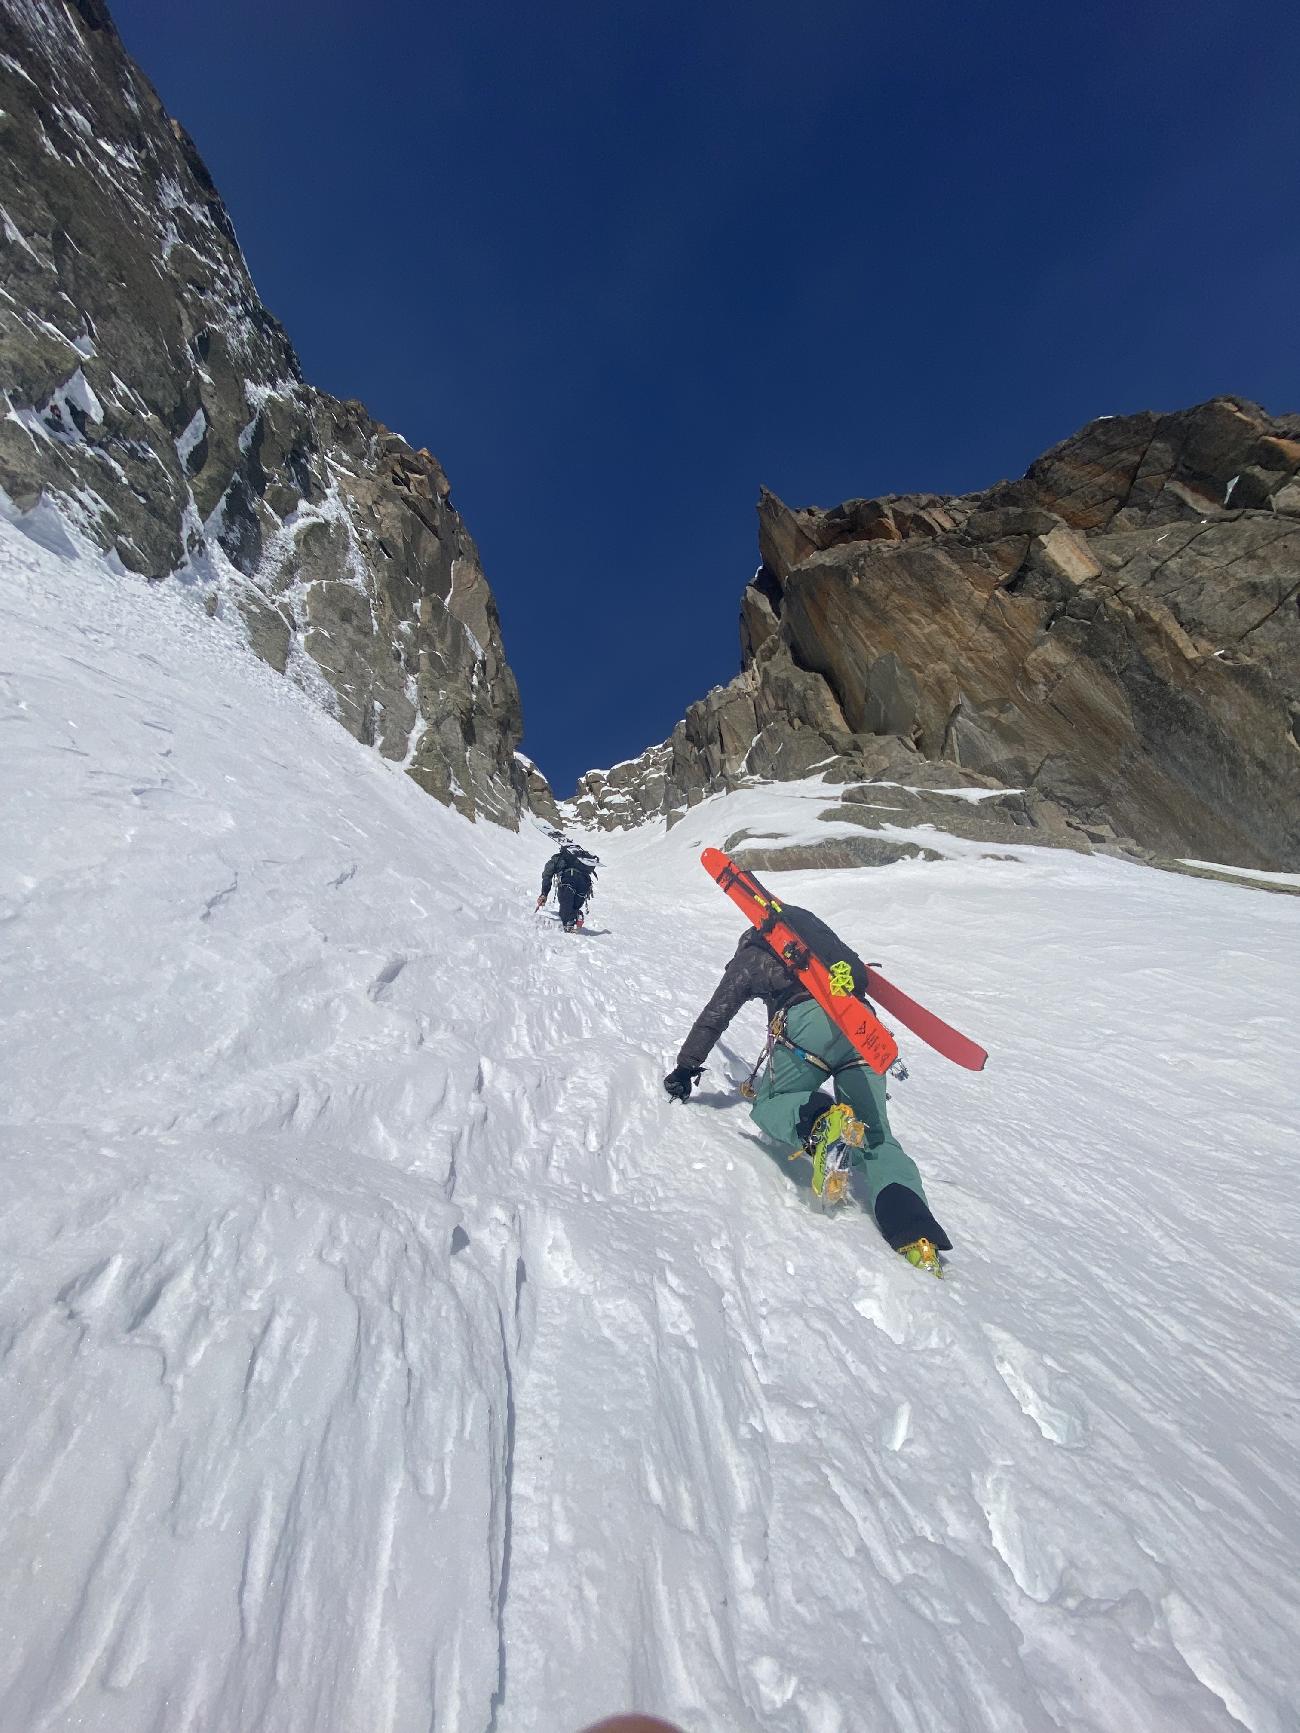 New ski descent on Capucin du Requin in Mont Blanc massif by Laurent Bibollet, Sam Favret, Julien Herry